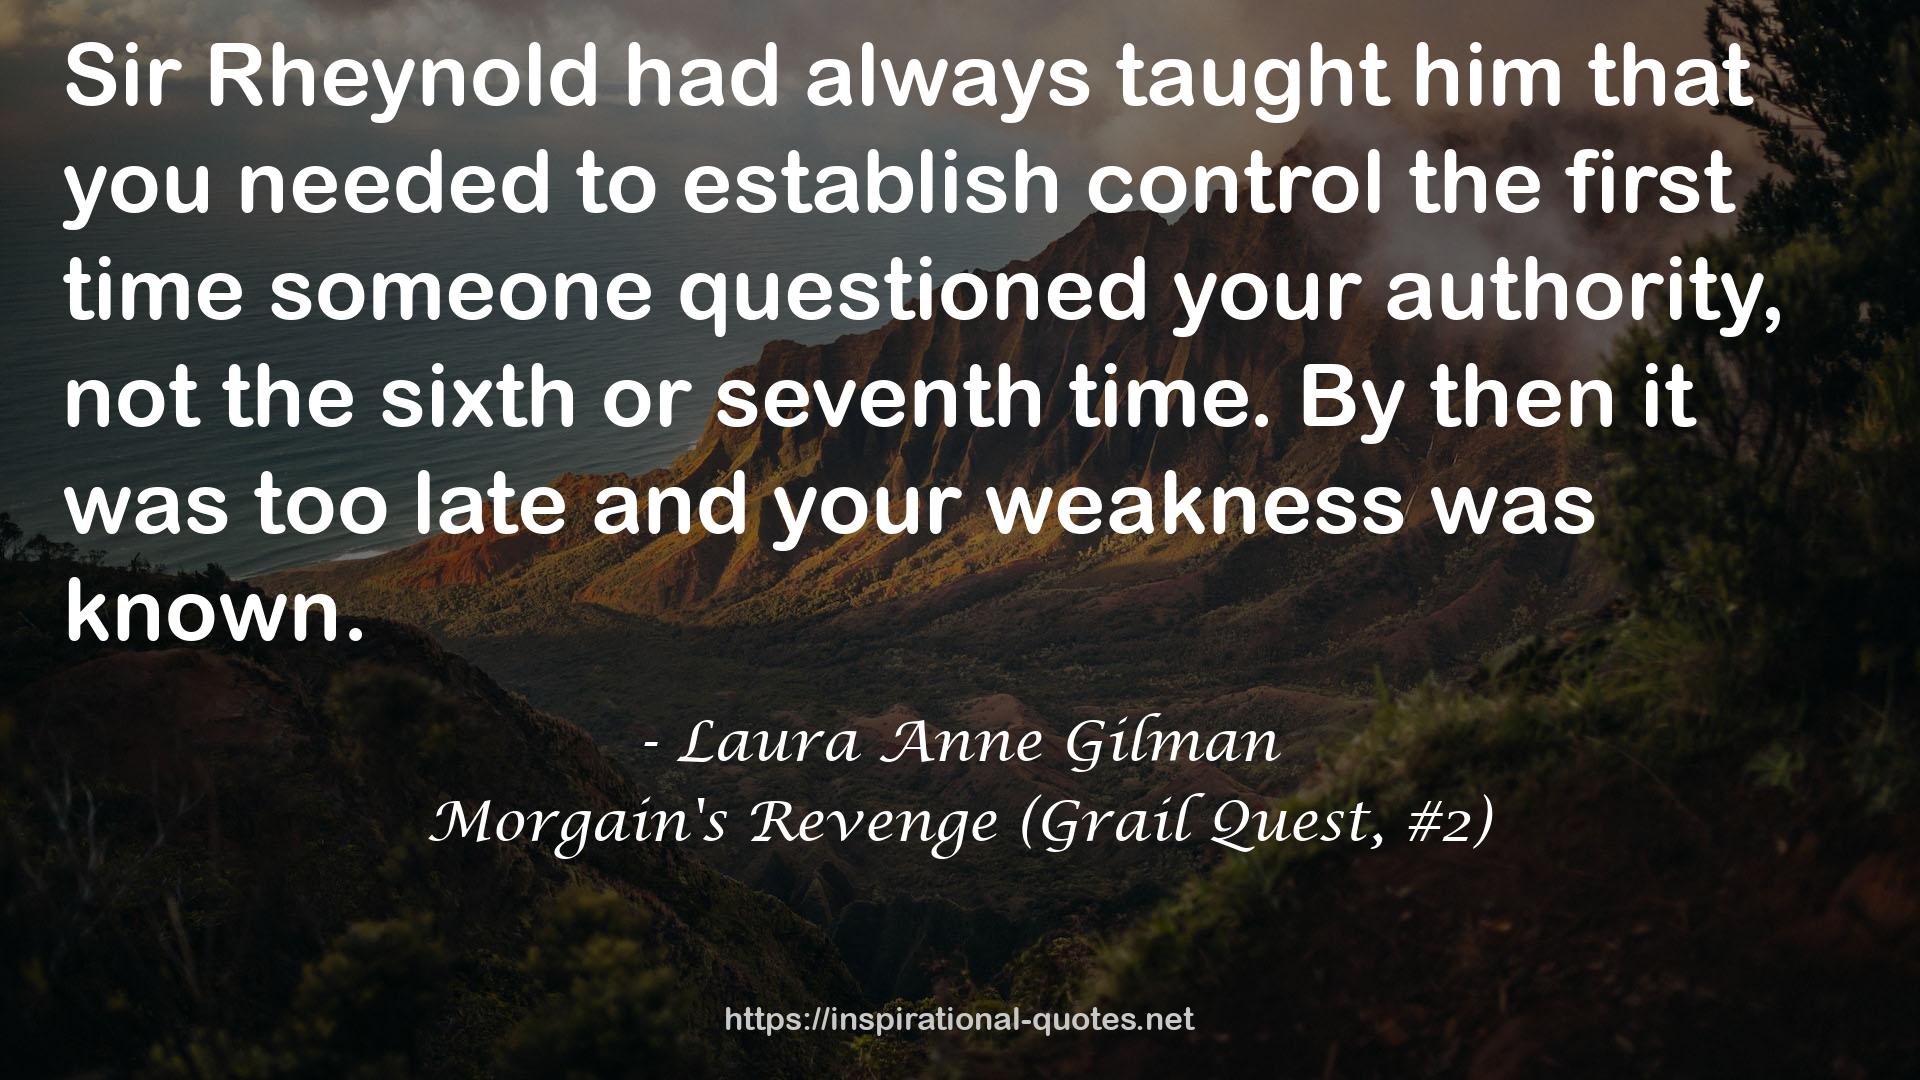 Morgain's Revenge (Grail Quest, #2) QUOTES